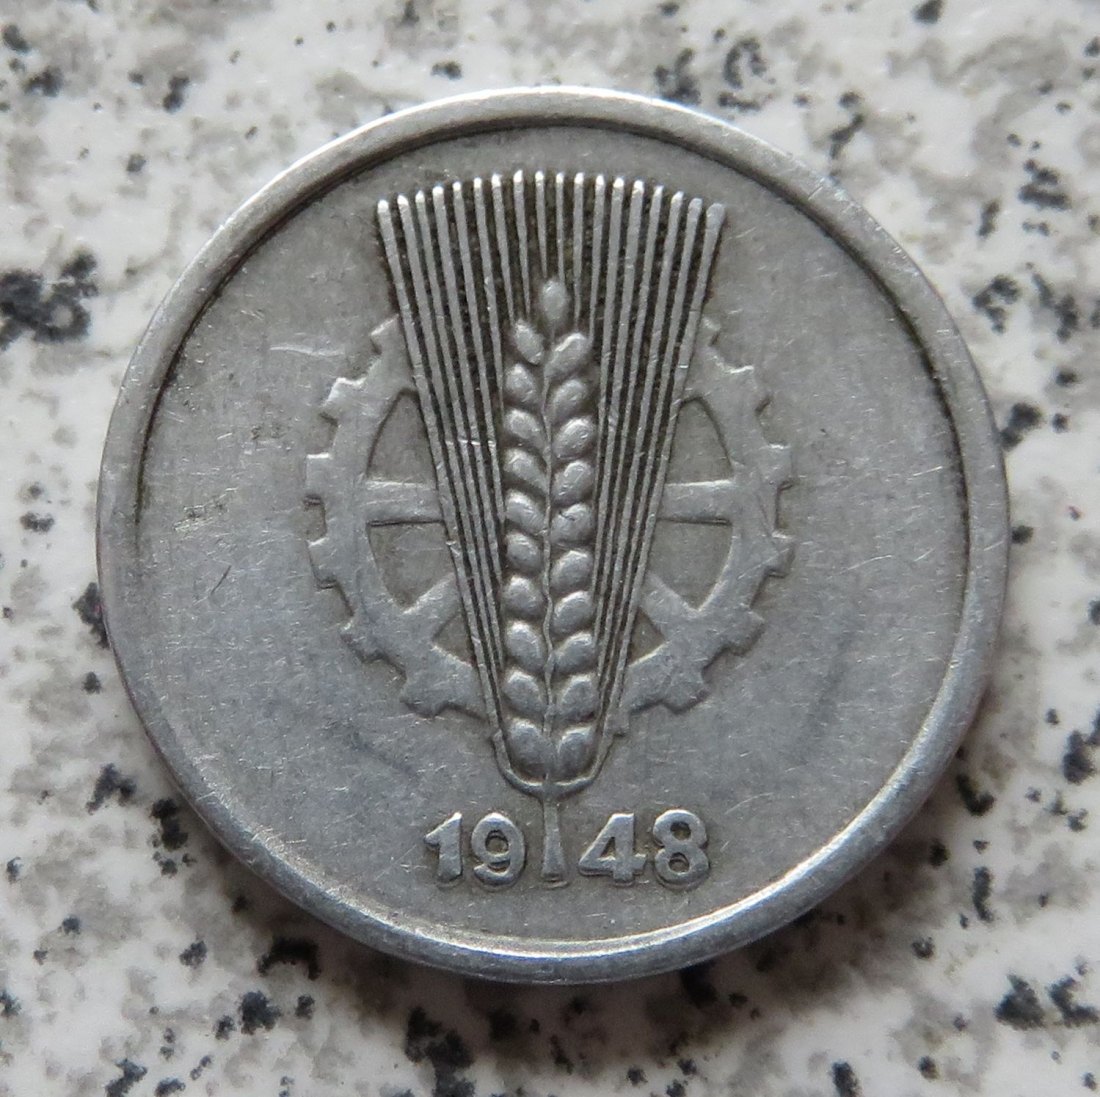  DDR 5 Pfennig 1948 A, Doppelschlag (Jahreszahl)   